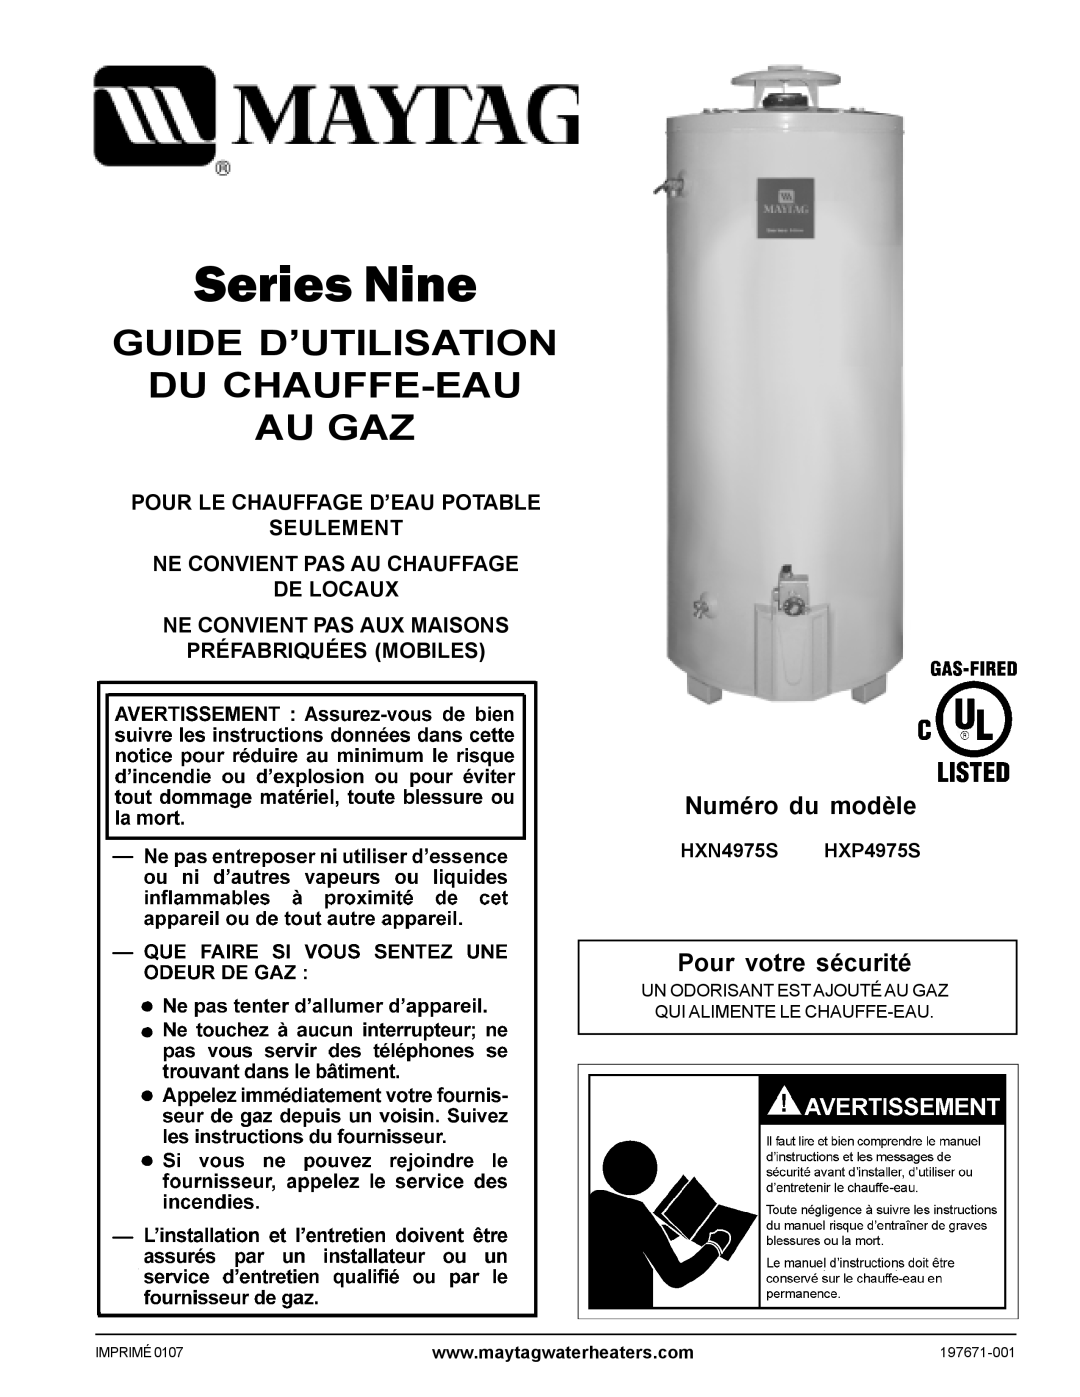 Maytag HXN4975S manual Guide D’Utilisation Du Chauffe-Eau Au Gaz, Numéro du modèle, Pour votre sécurité, Series Nine 